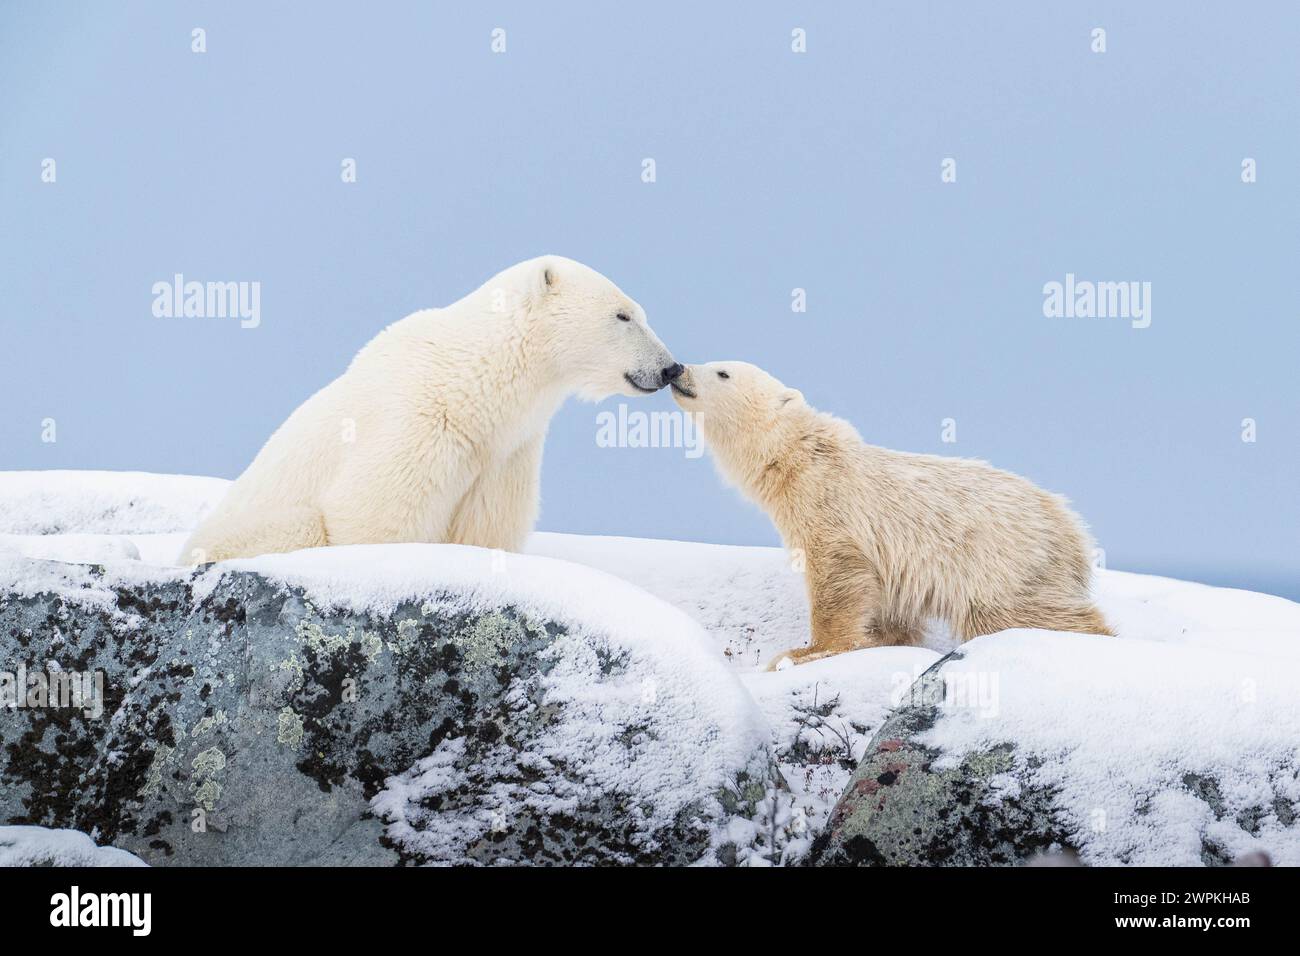 Kostbare Momente mit der Familie KANADA BEZAUBERNDE Bilder von zwei Eisbären, die miteinander spielen, werden Sie zum Kichern bringen. Etwa zwei Jahre alt Stockfoto